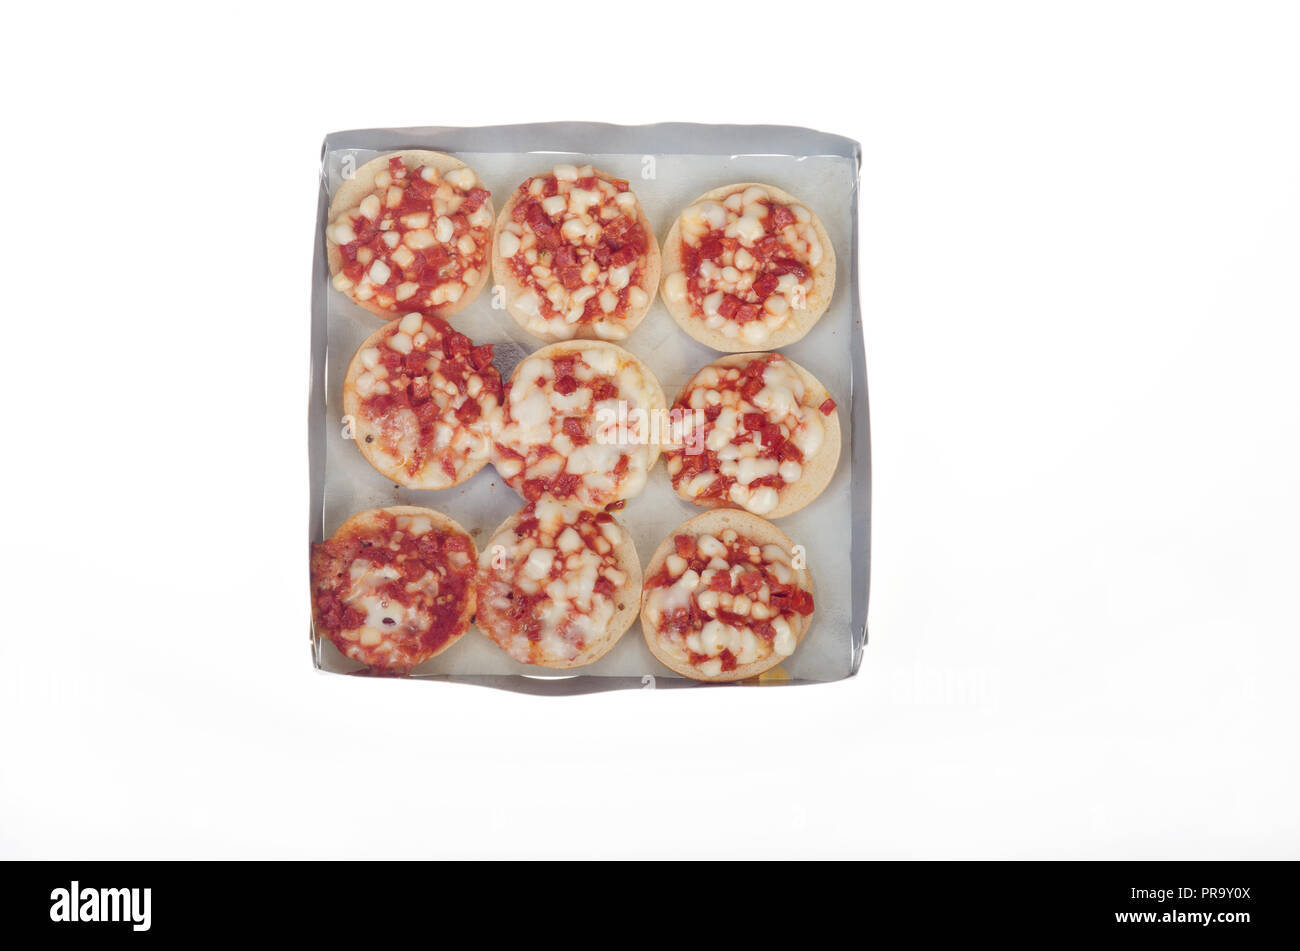 Le bac d'un four micro-ondes Mini Pizza Bagel cuit mord avec sauce tomate, pepperoni et fromage mozzarella Banque D'Images